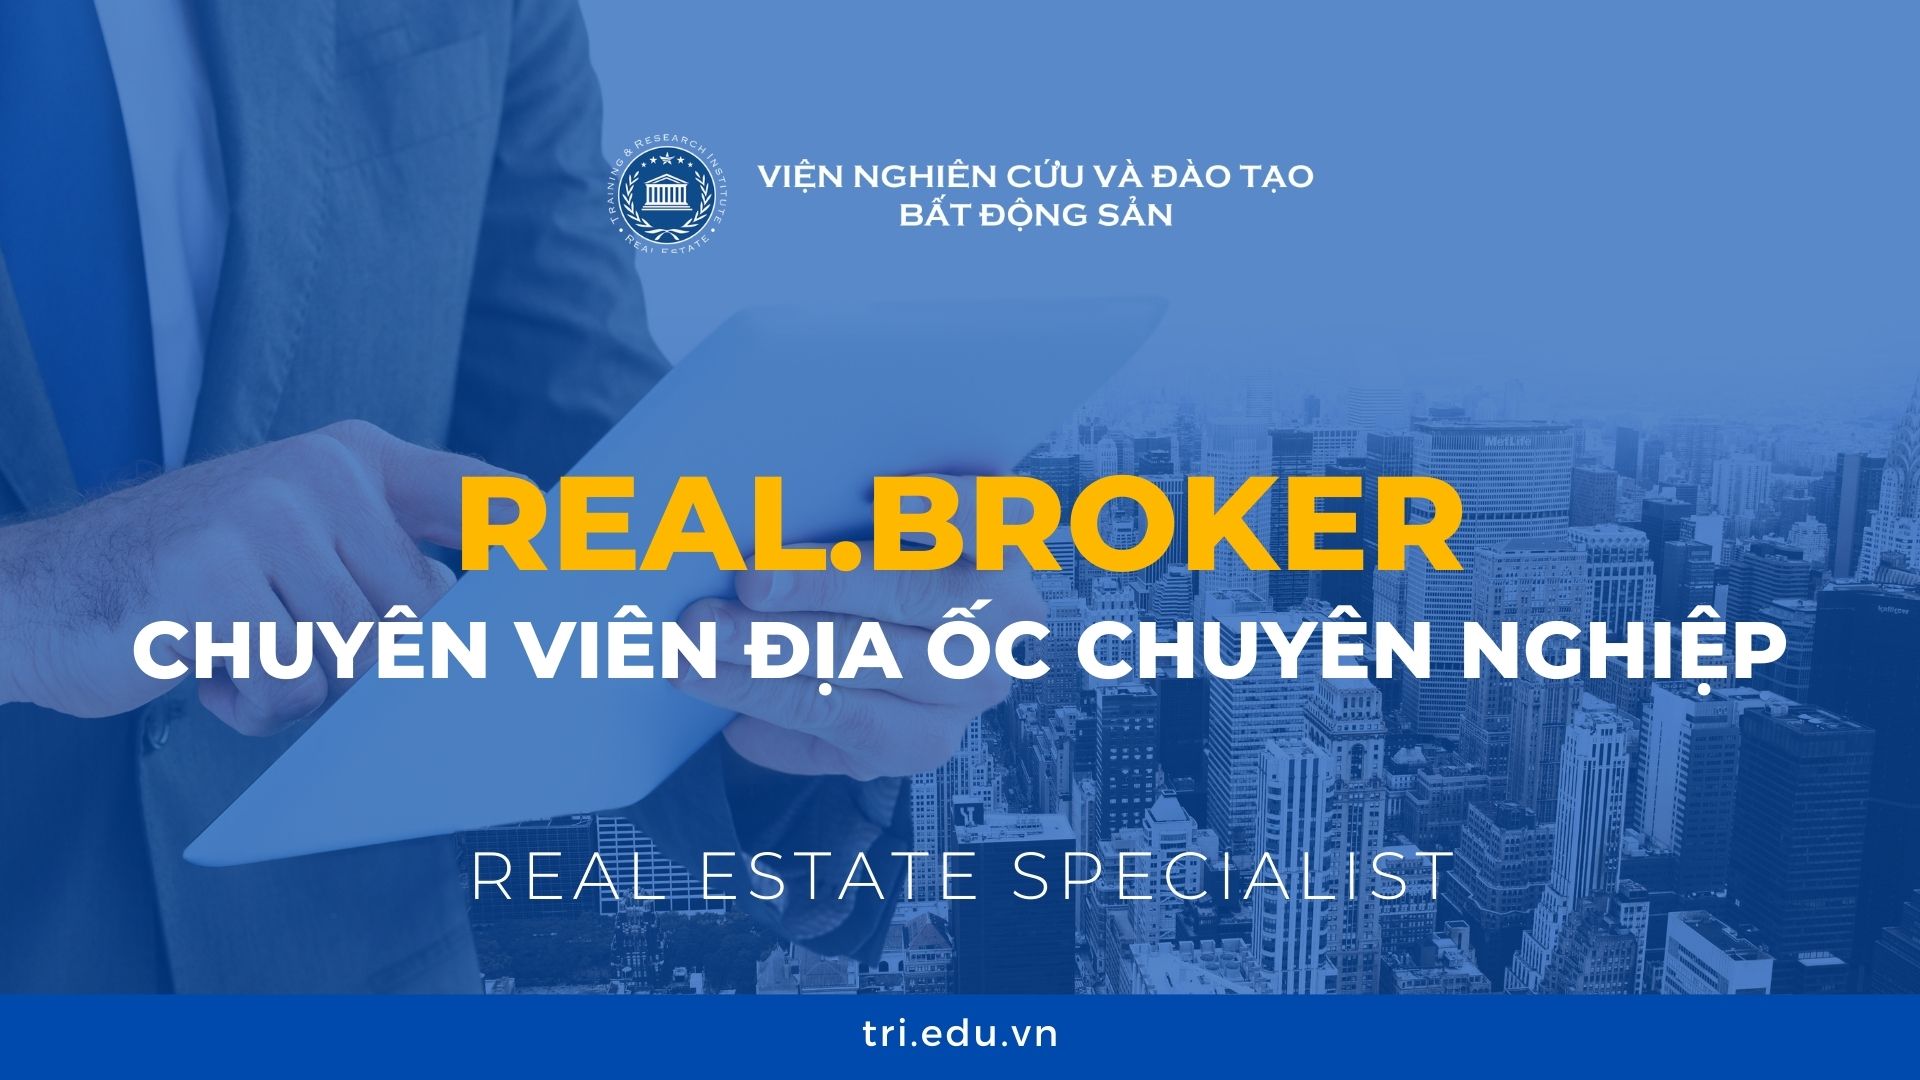 Real Broker Chuyen Vien Dia Oc Chuyen Nghiep